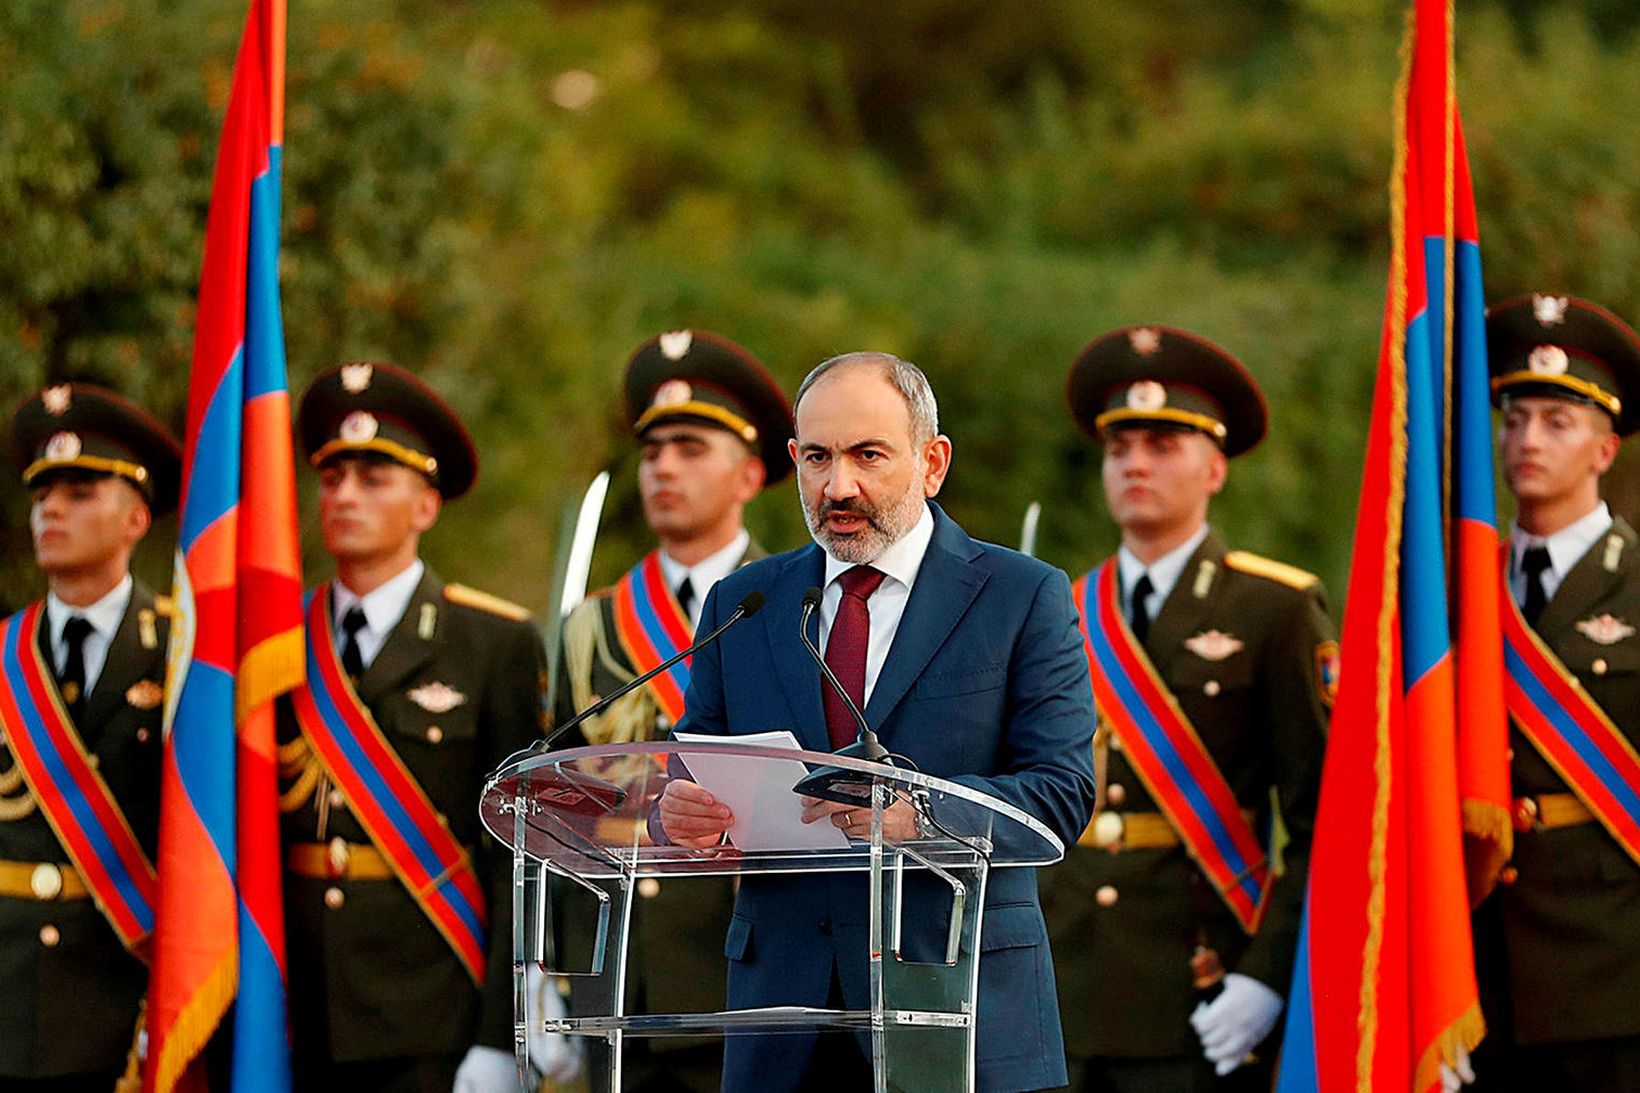 Nikol Pashinyan flytur erindi við minnigarathöfn um fallna armenska hermenn. …